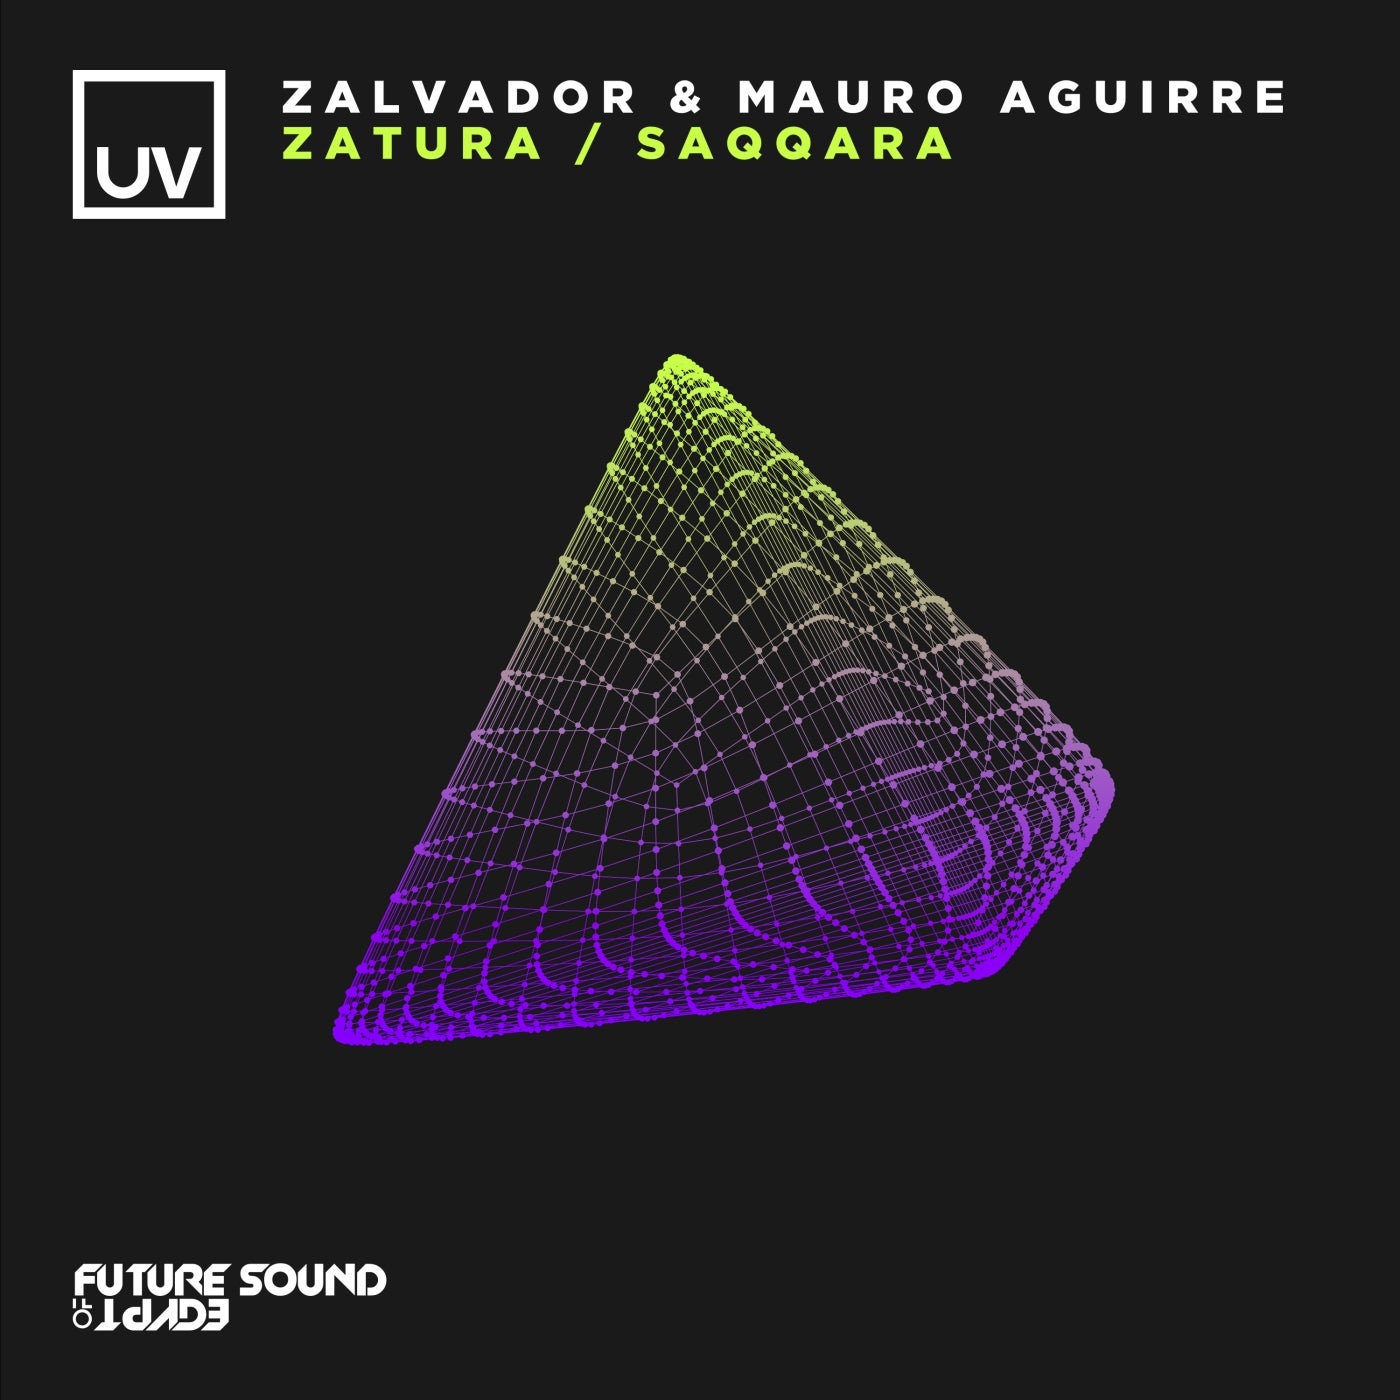 Zalvador & Mauro Aguirre - Saqqara - Zatura EP [FSOEUV179]